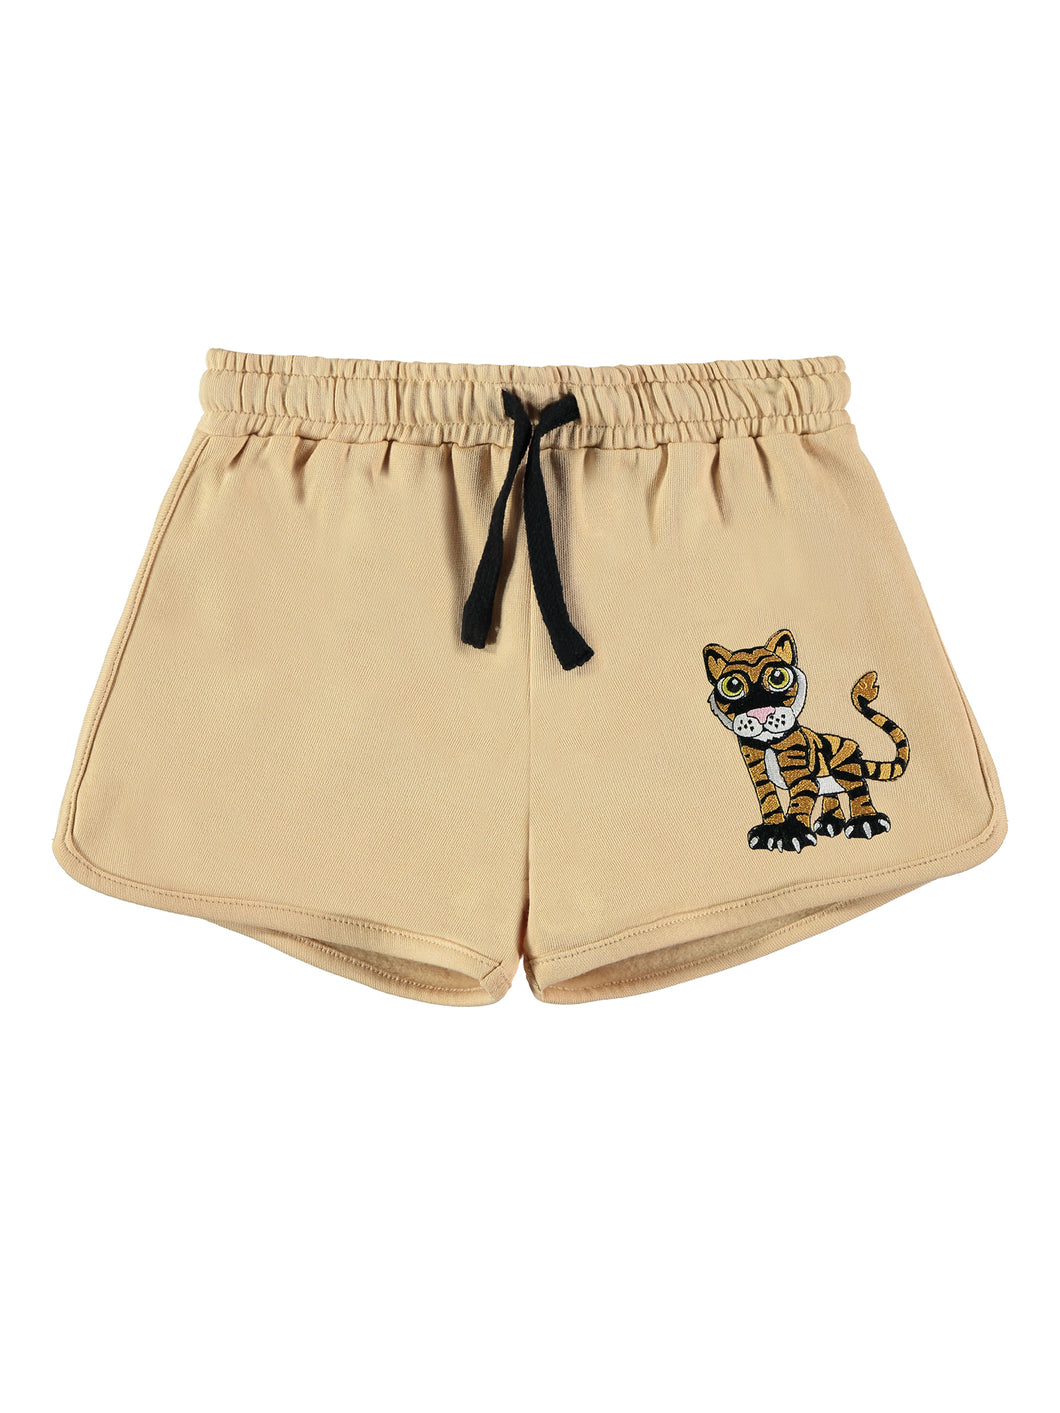 Tigern Shorts by TAO & Friends